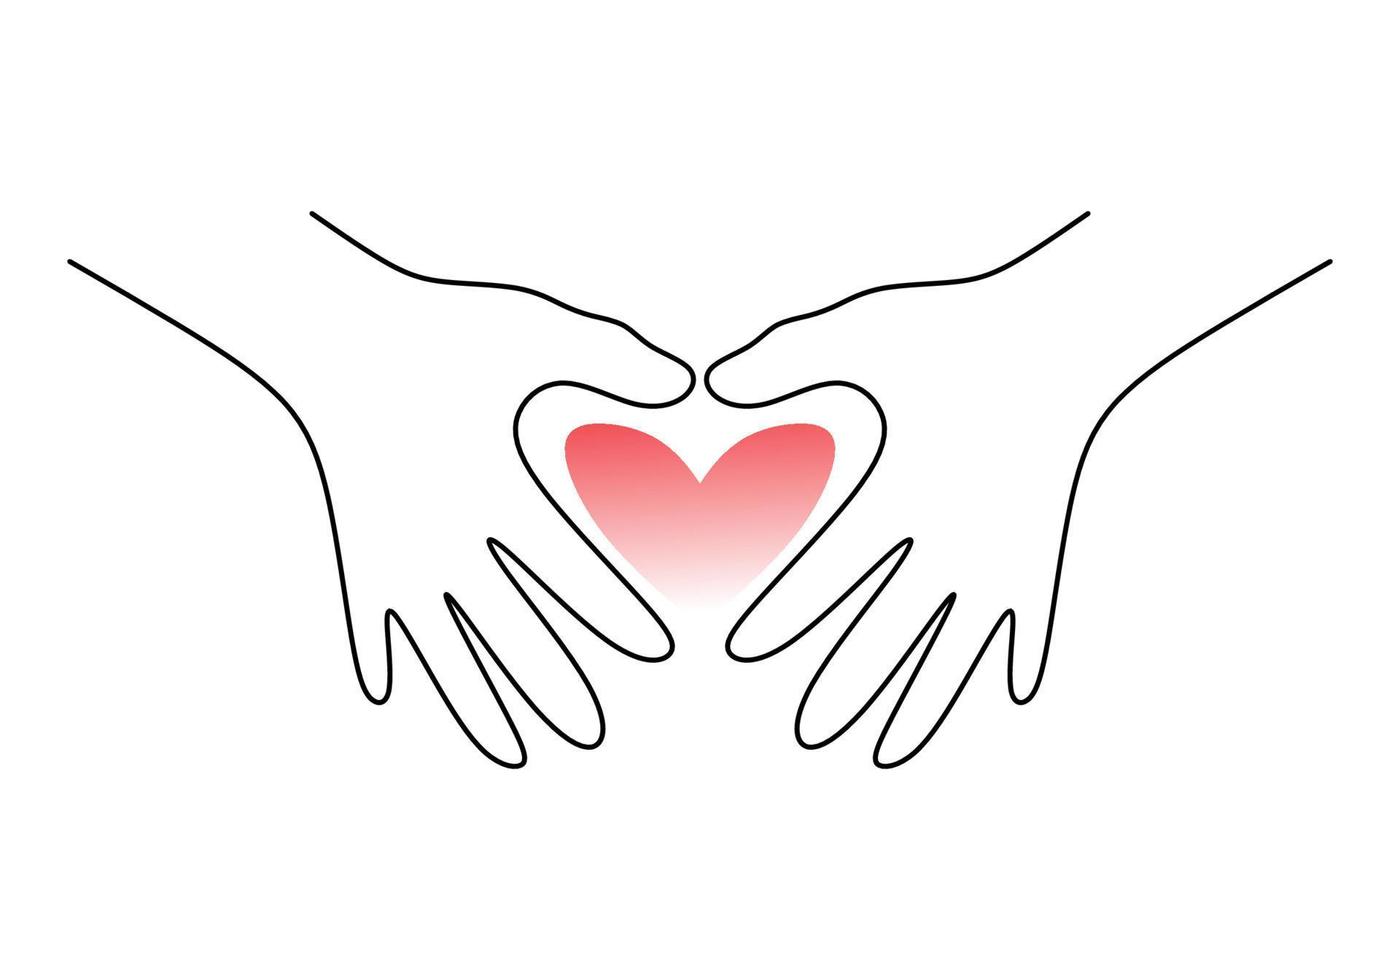 uno continuo singolo linea mano disegno di Due mani con amore simbolo vettore